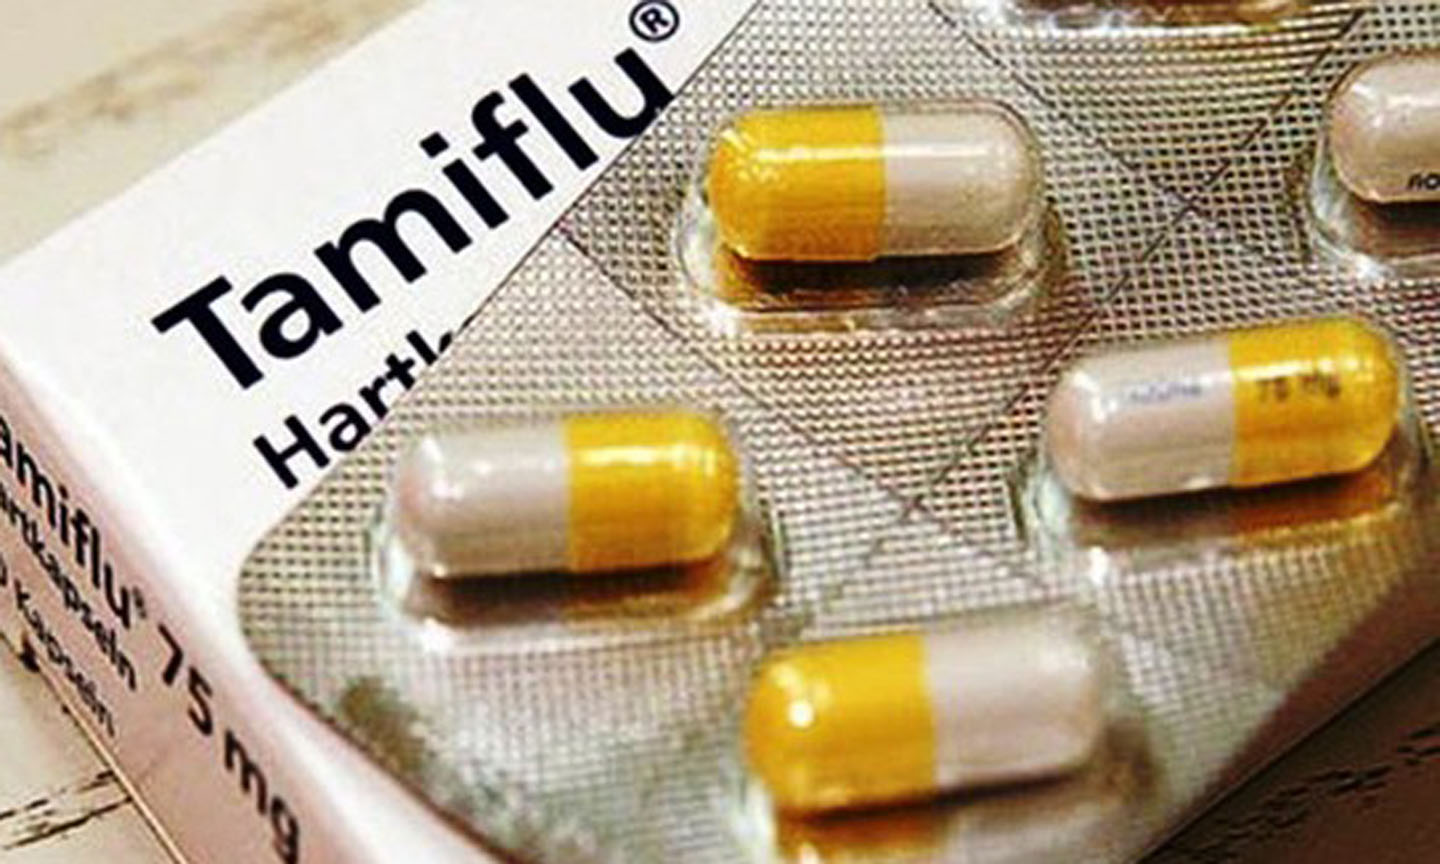 Cục Quản lý Dược cho biết thêm, thuốc Tamiflu đã được cấp giấy đăng ký lưu hành tại Việt Nam, không phải thuốc thuộc diện kiểm soát đặc biệt và được nhập khẩu theo nhu cầu thị trường. 